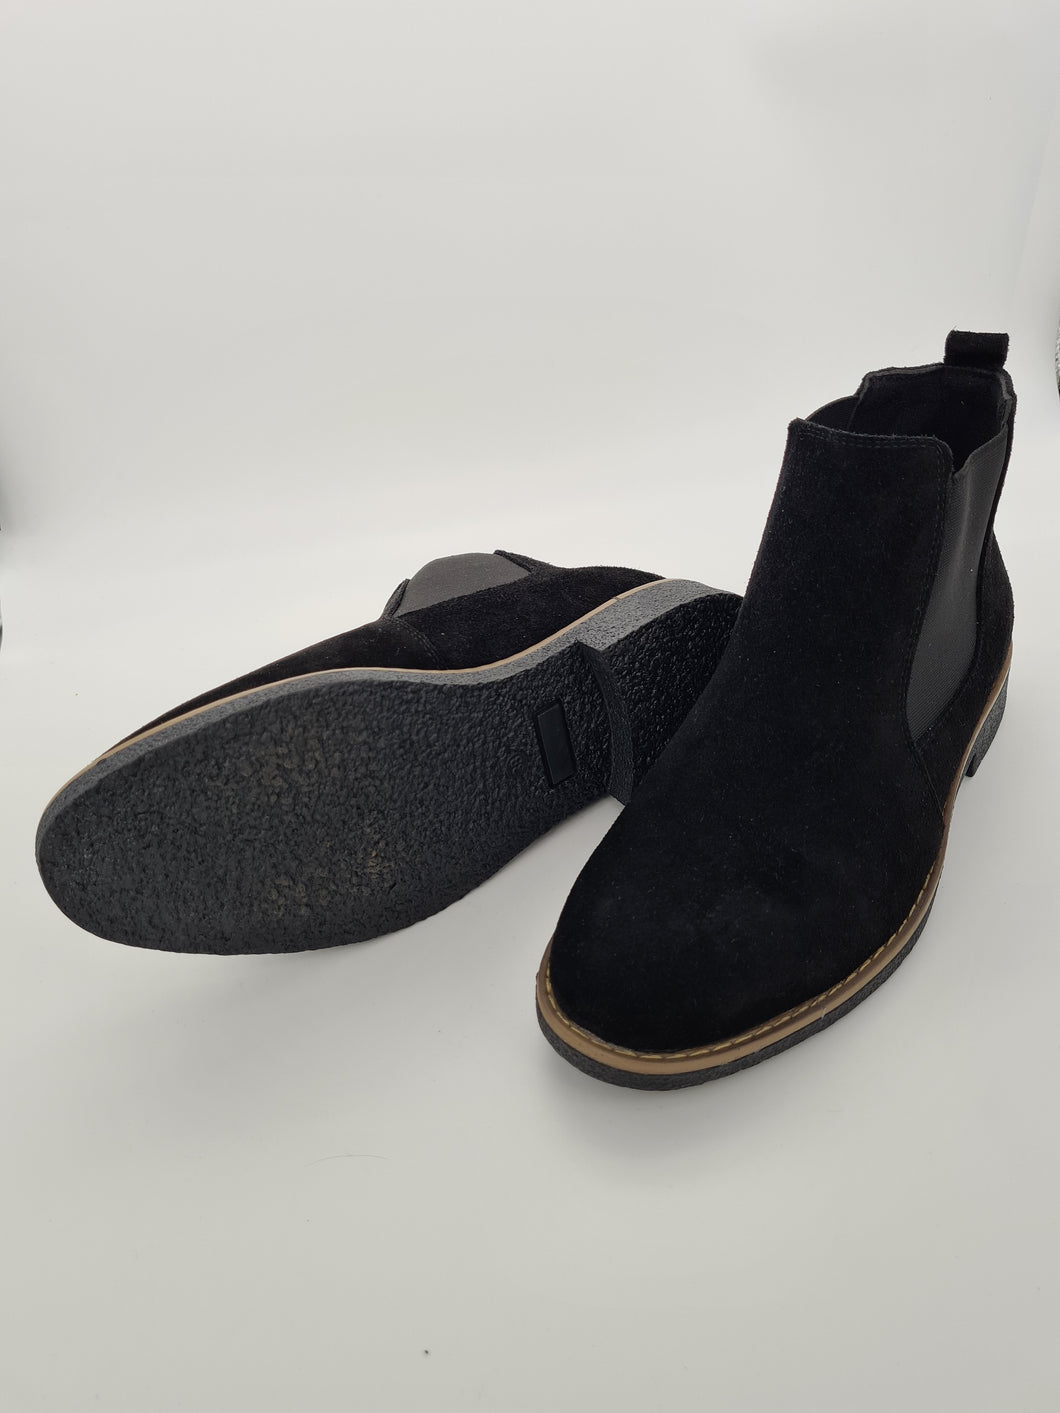 Damen Wild Leder Chalsea Boots Stiefel Stiefeletten in Schwarz Größe 36-42